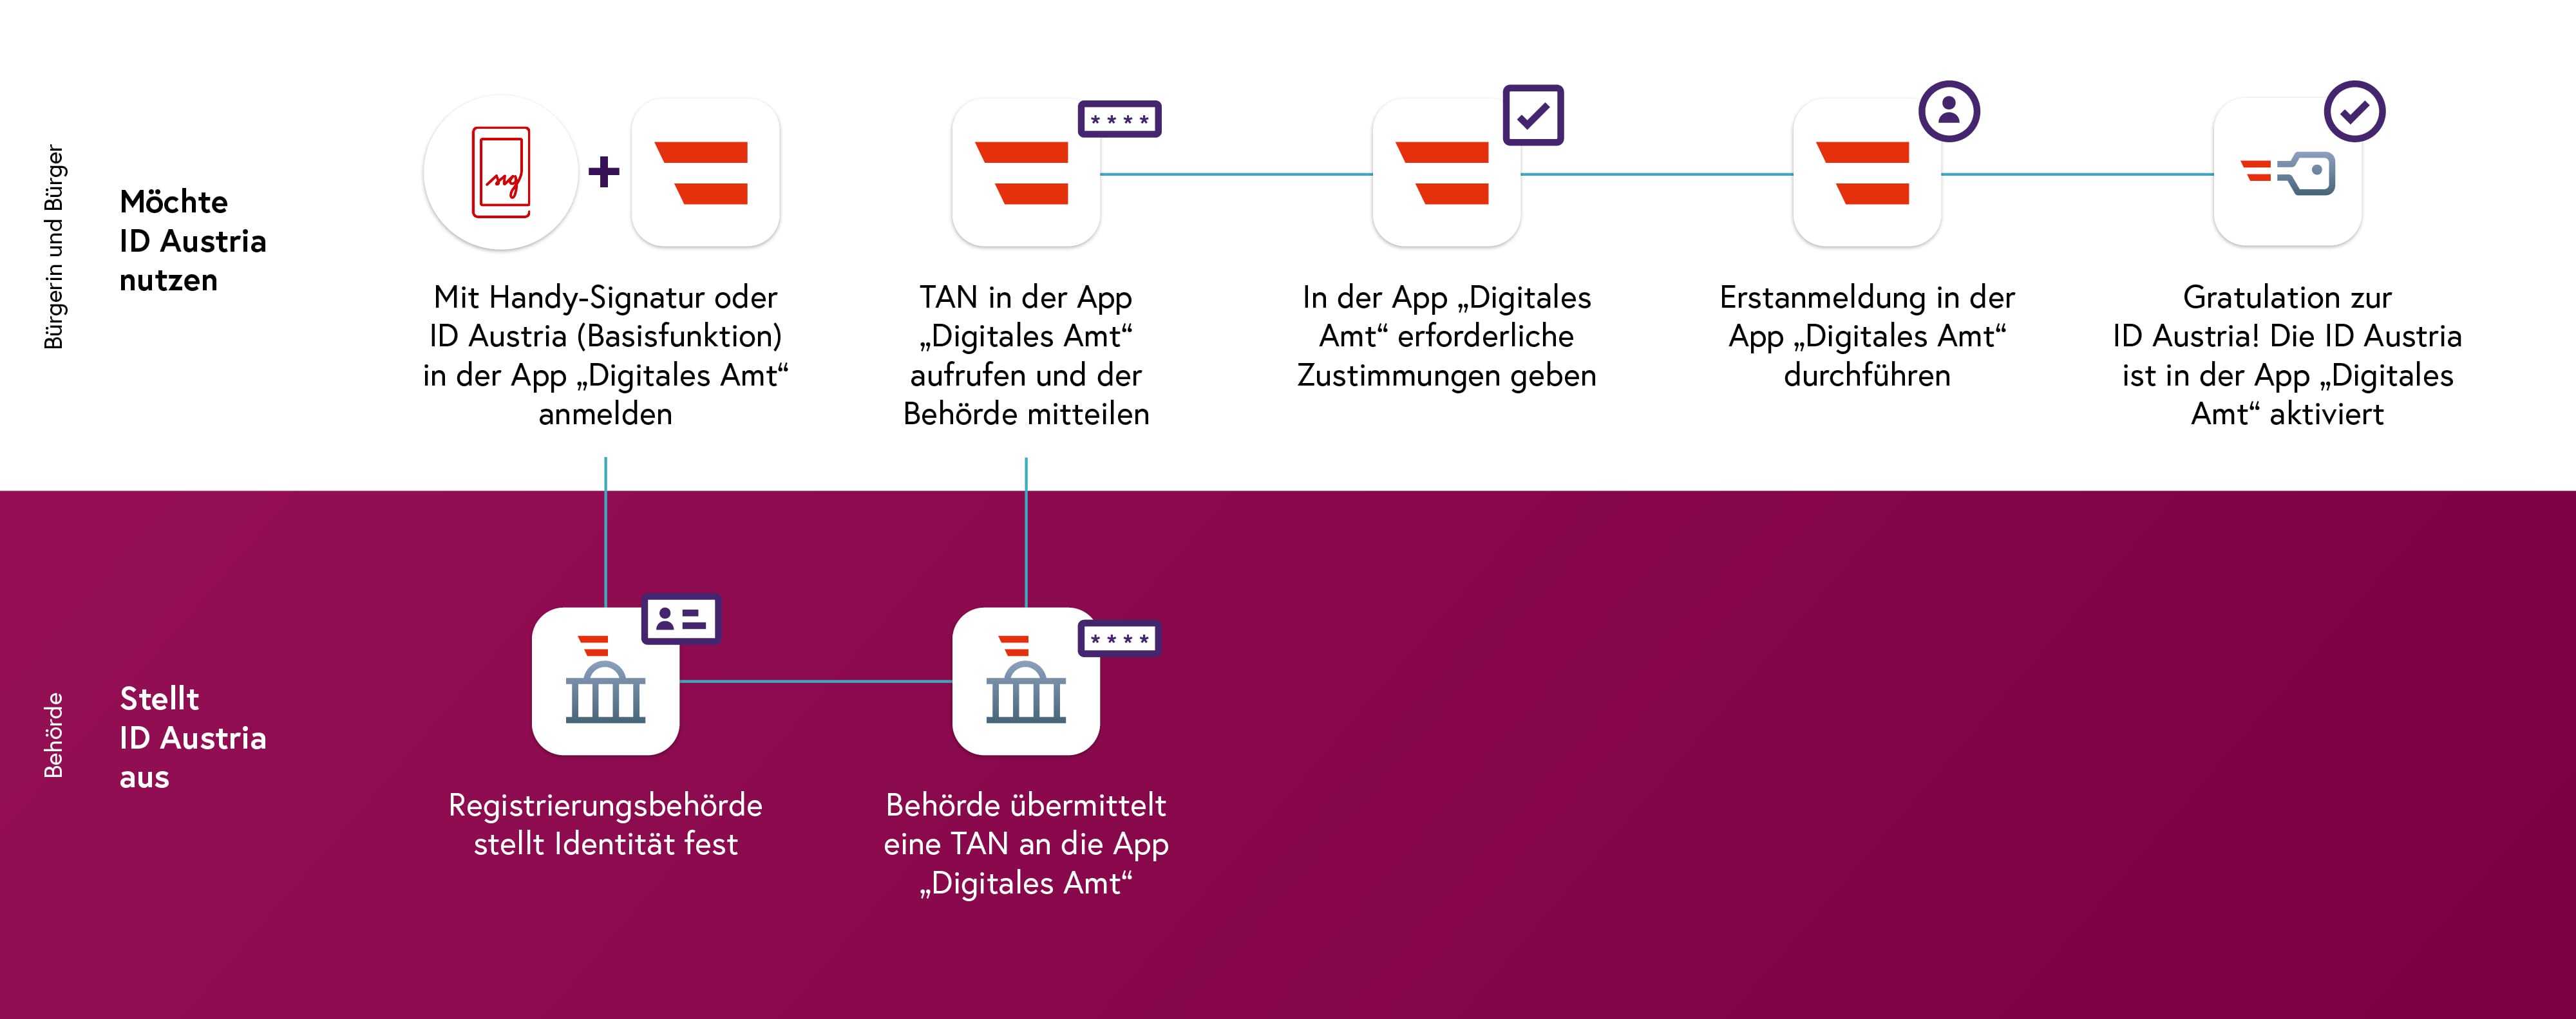 ID Austria Registrierungsprozess für Handy-Signatur